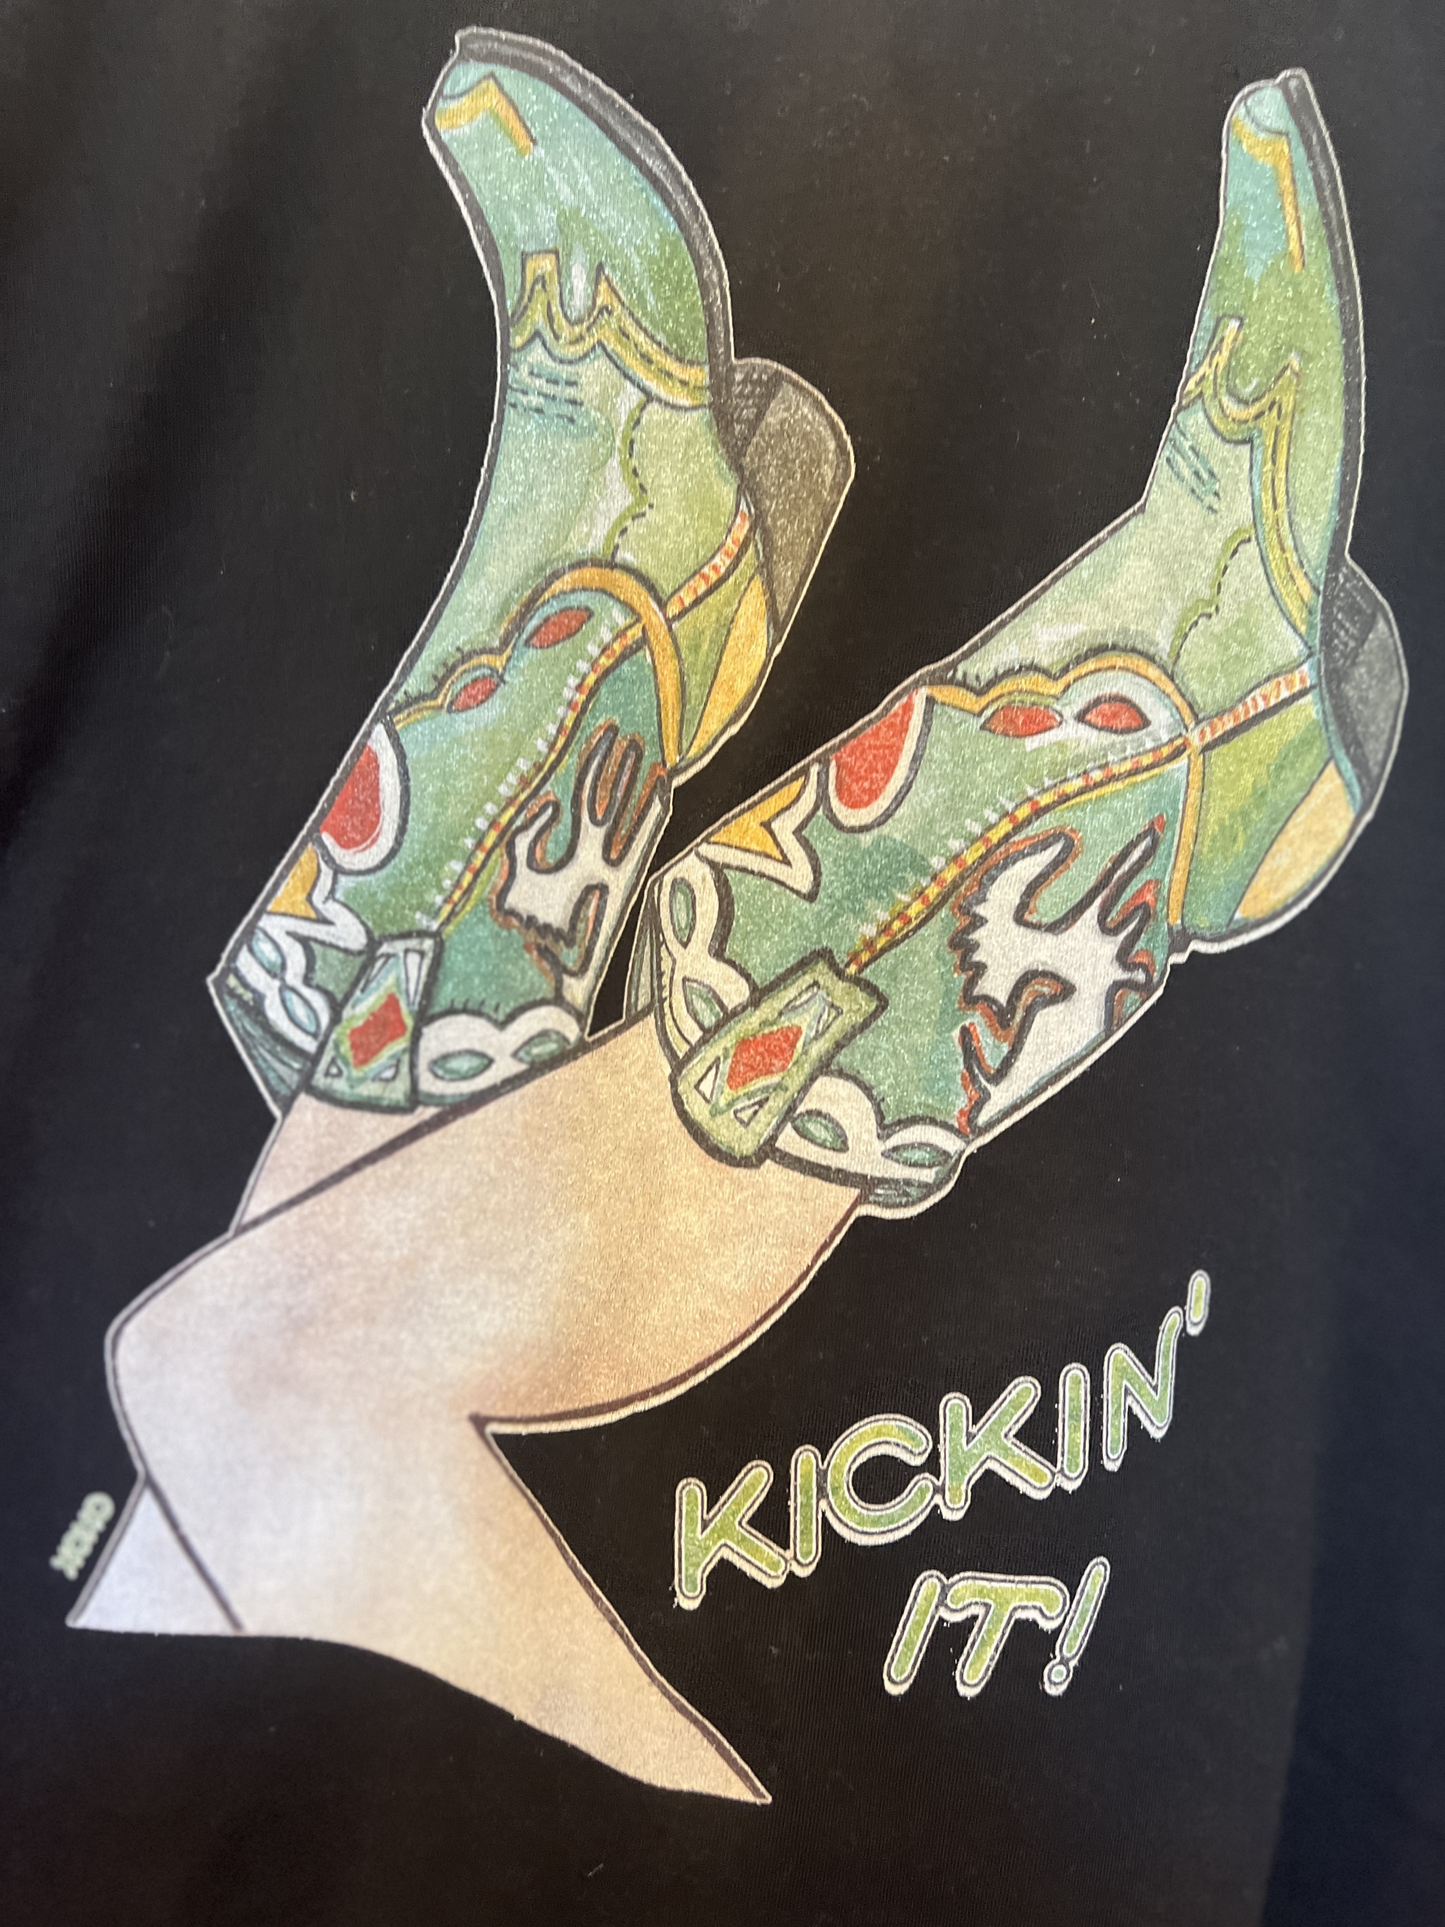 Kickin It